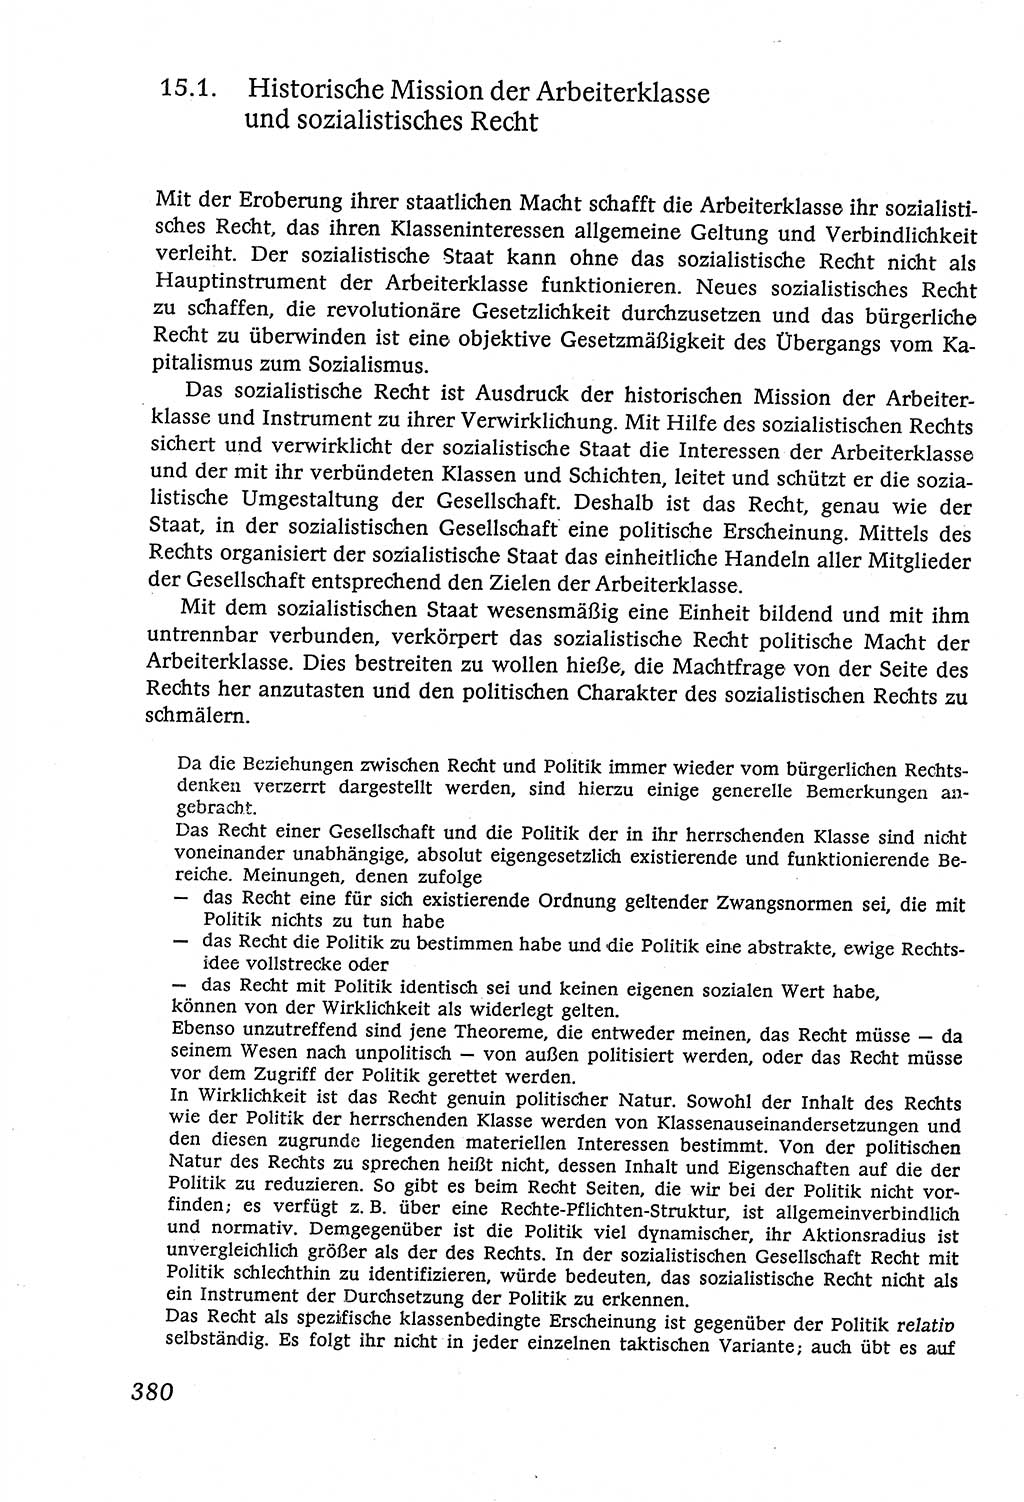 Marxistisch-leninistische (ML) Staats- und Rechtstheorie [Deutsche Demokratische Republik (DDR)], Lehrbuch 1980, Seite 380 (ML St.-R.-Th. DDR Lb. 1980, S. 380)